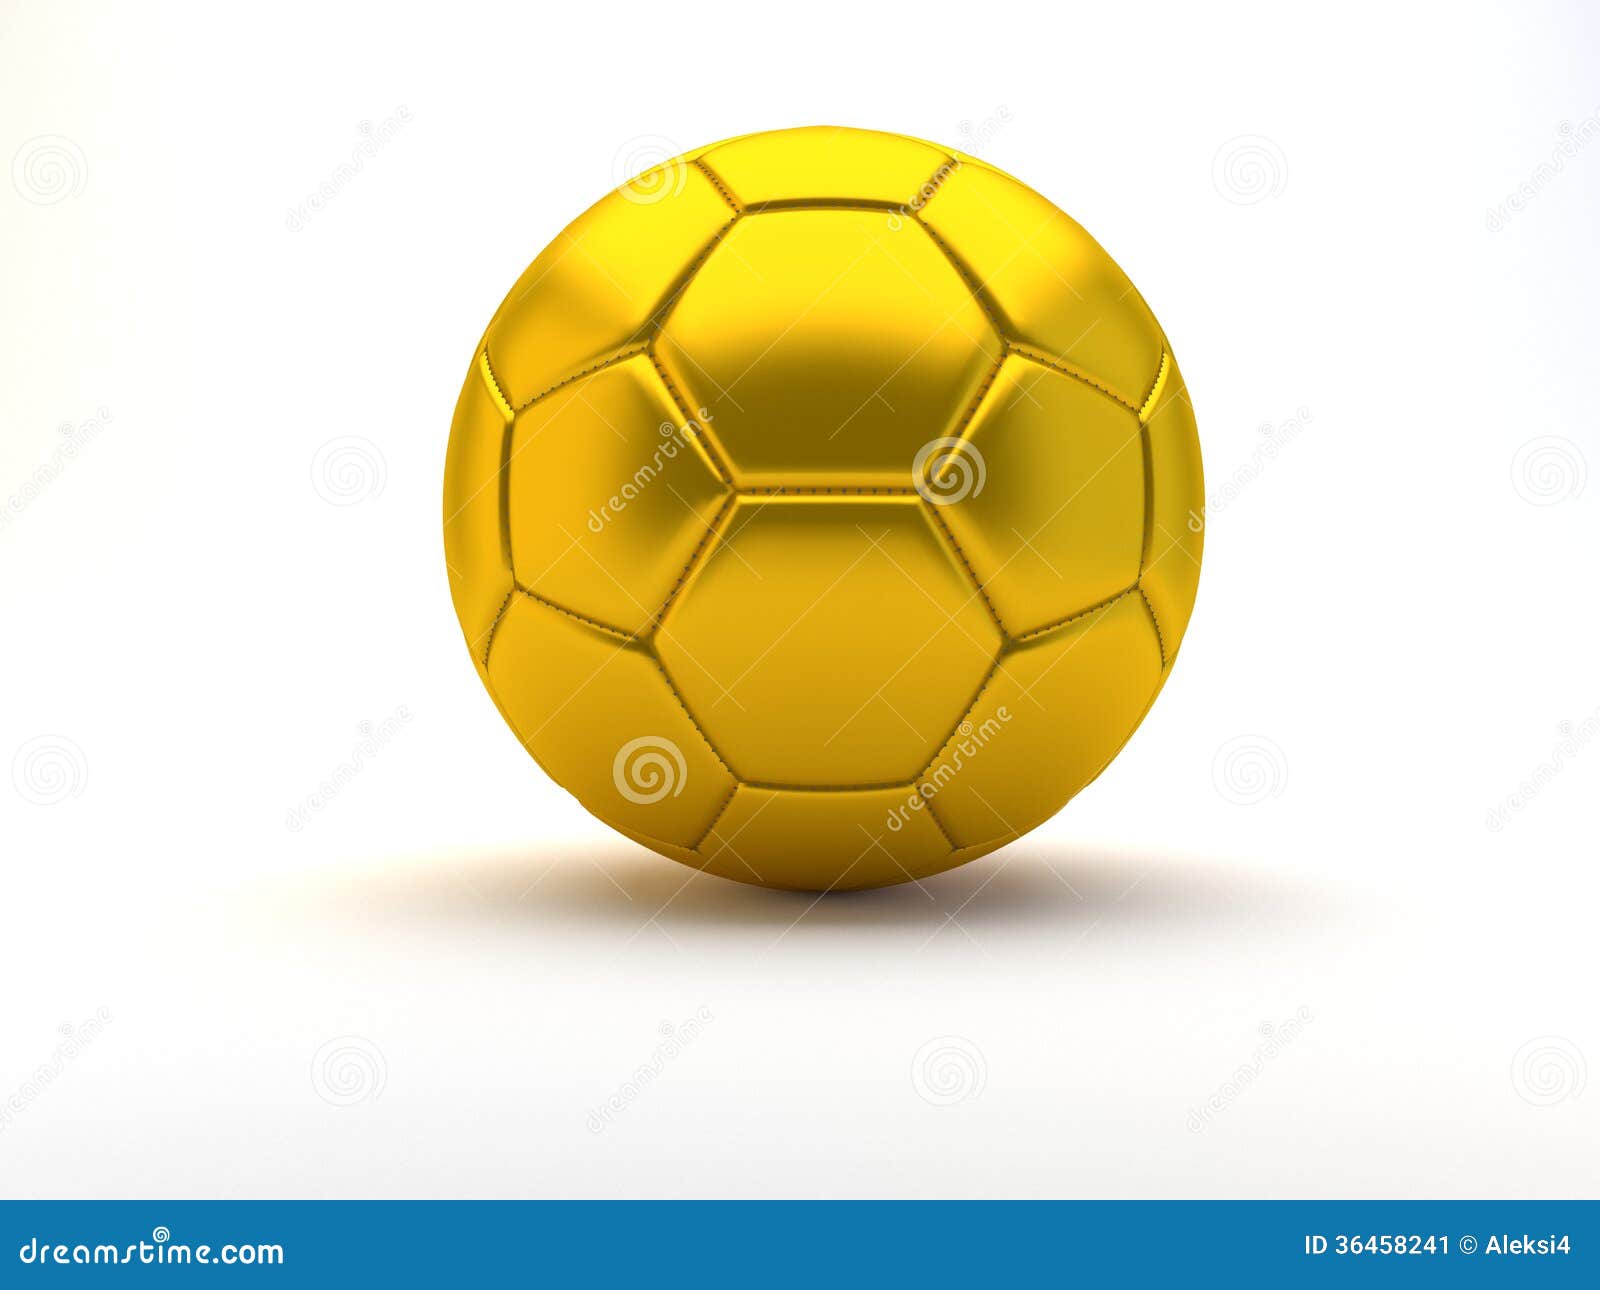 Gold soccer ball stock illustration. Illustration of soccer - 36458241